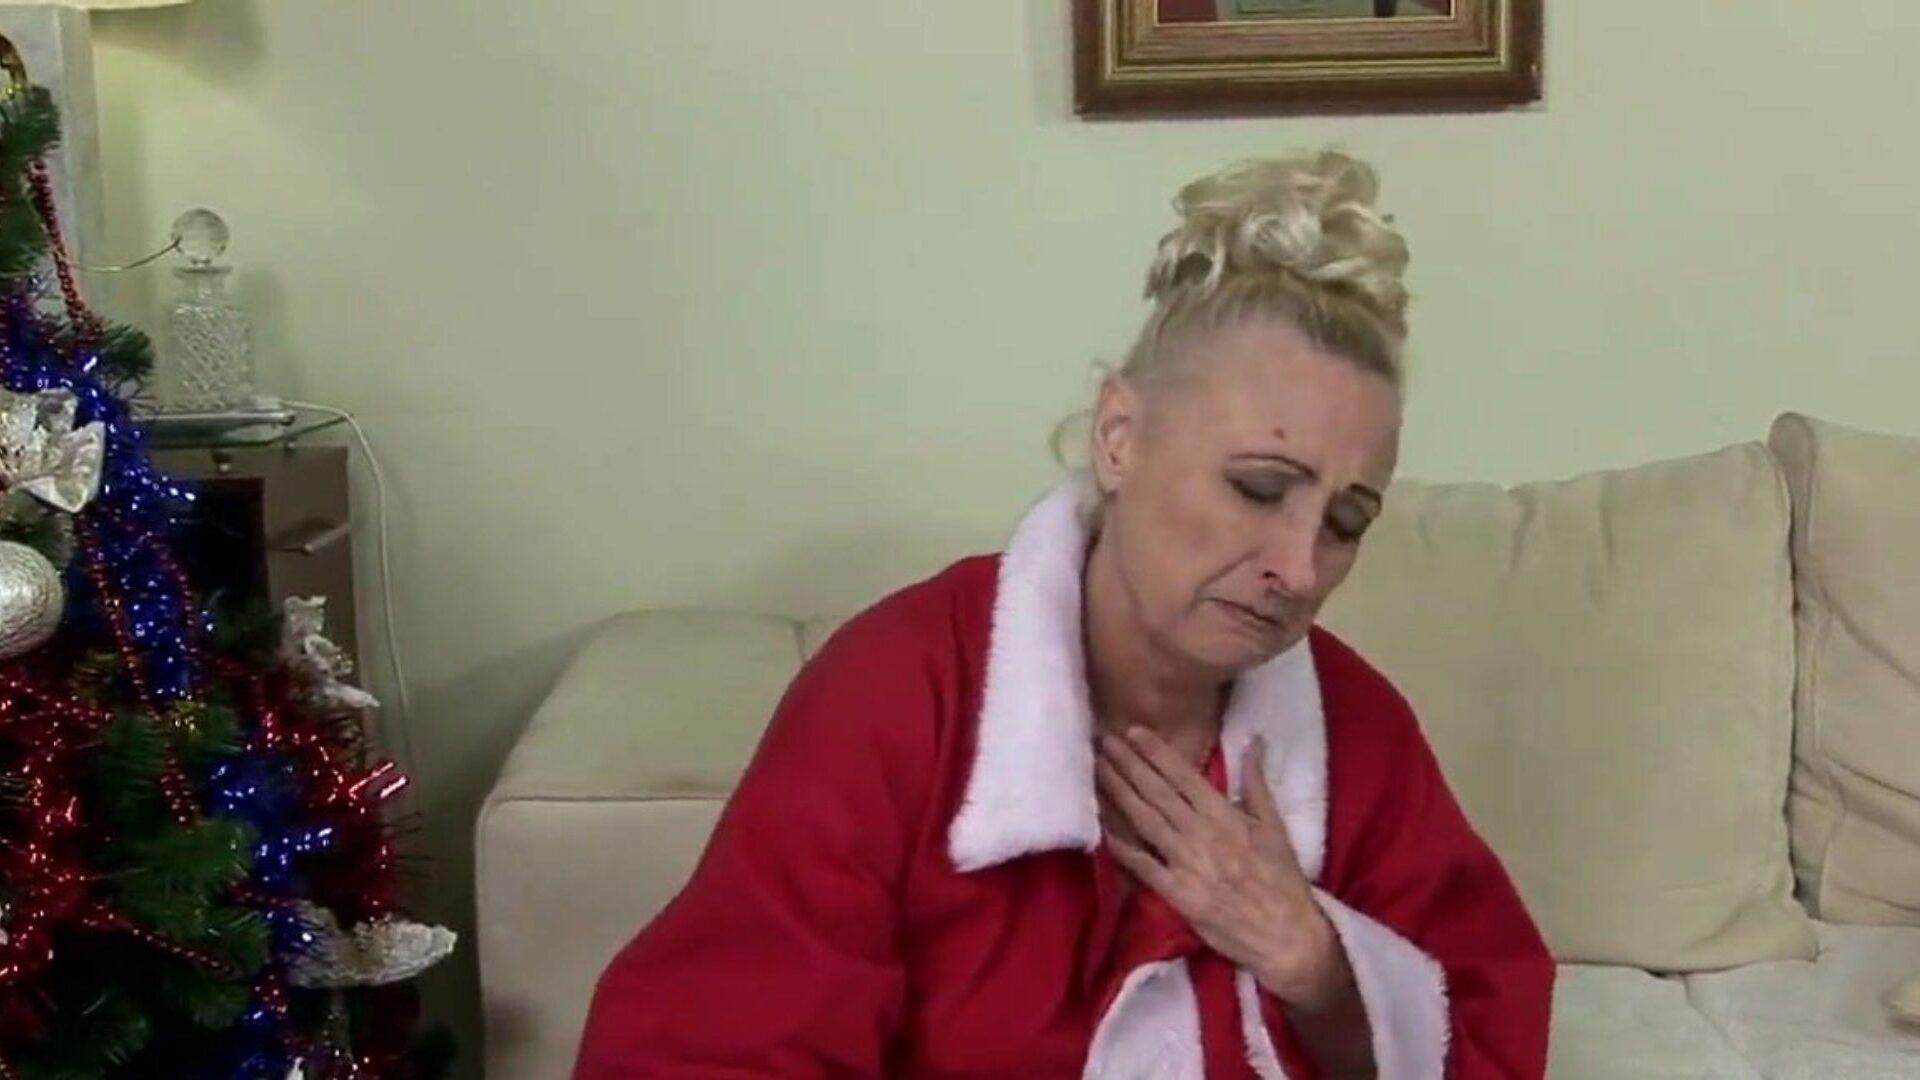 סבתא לא רוצה לבלות את חג המולד לבד: פורנו בחינם E8 צפה בסבתא לא רוצה לבלות את חג המולד לבד בסצנת סרטים על xhamster - הארכיון האולטימטיבי של סבתא וסבתא בחינם לכל צינור בחינם.